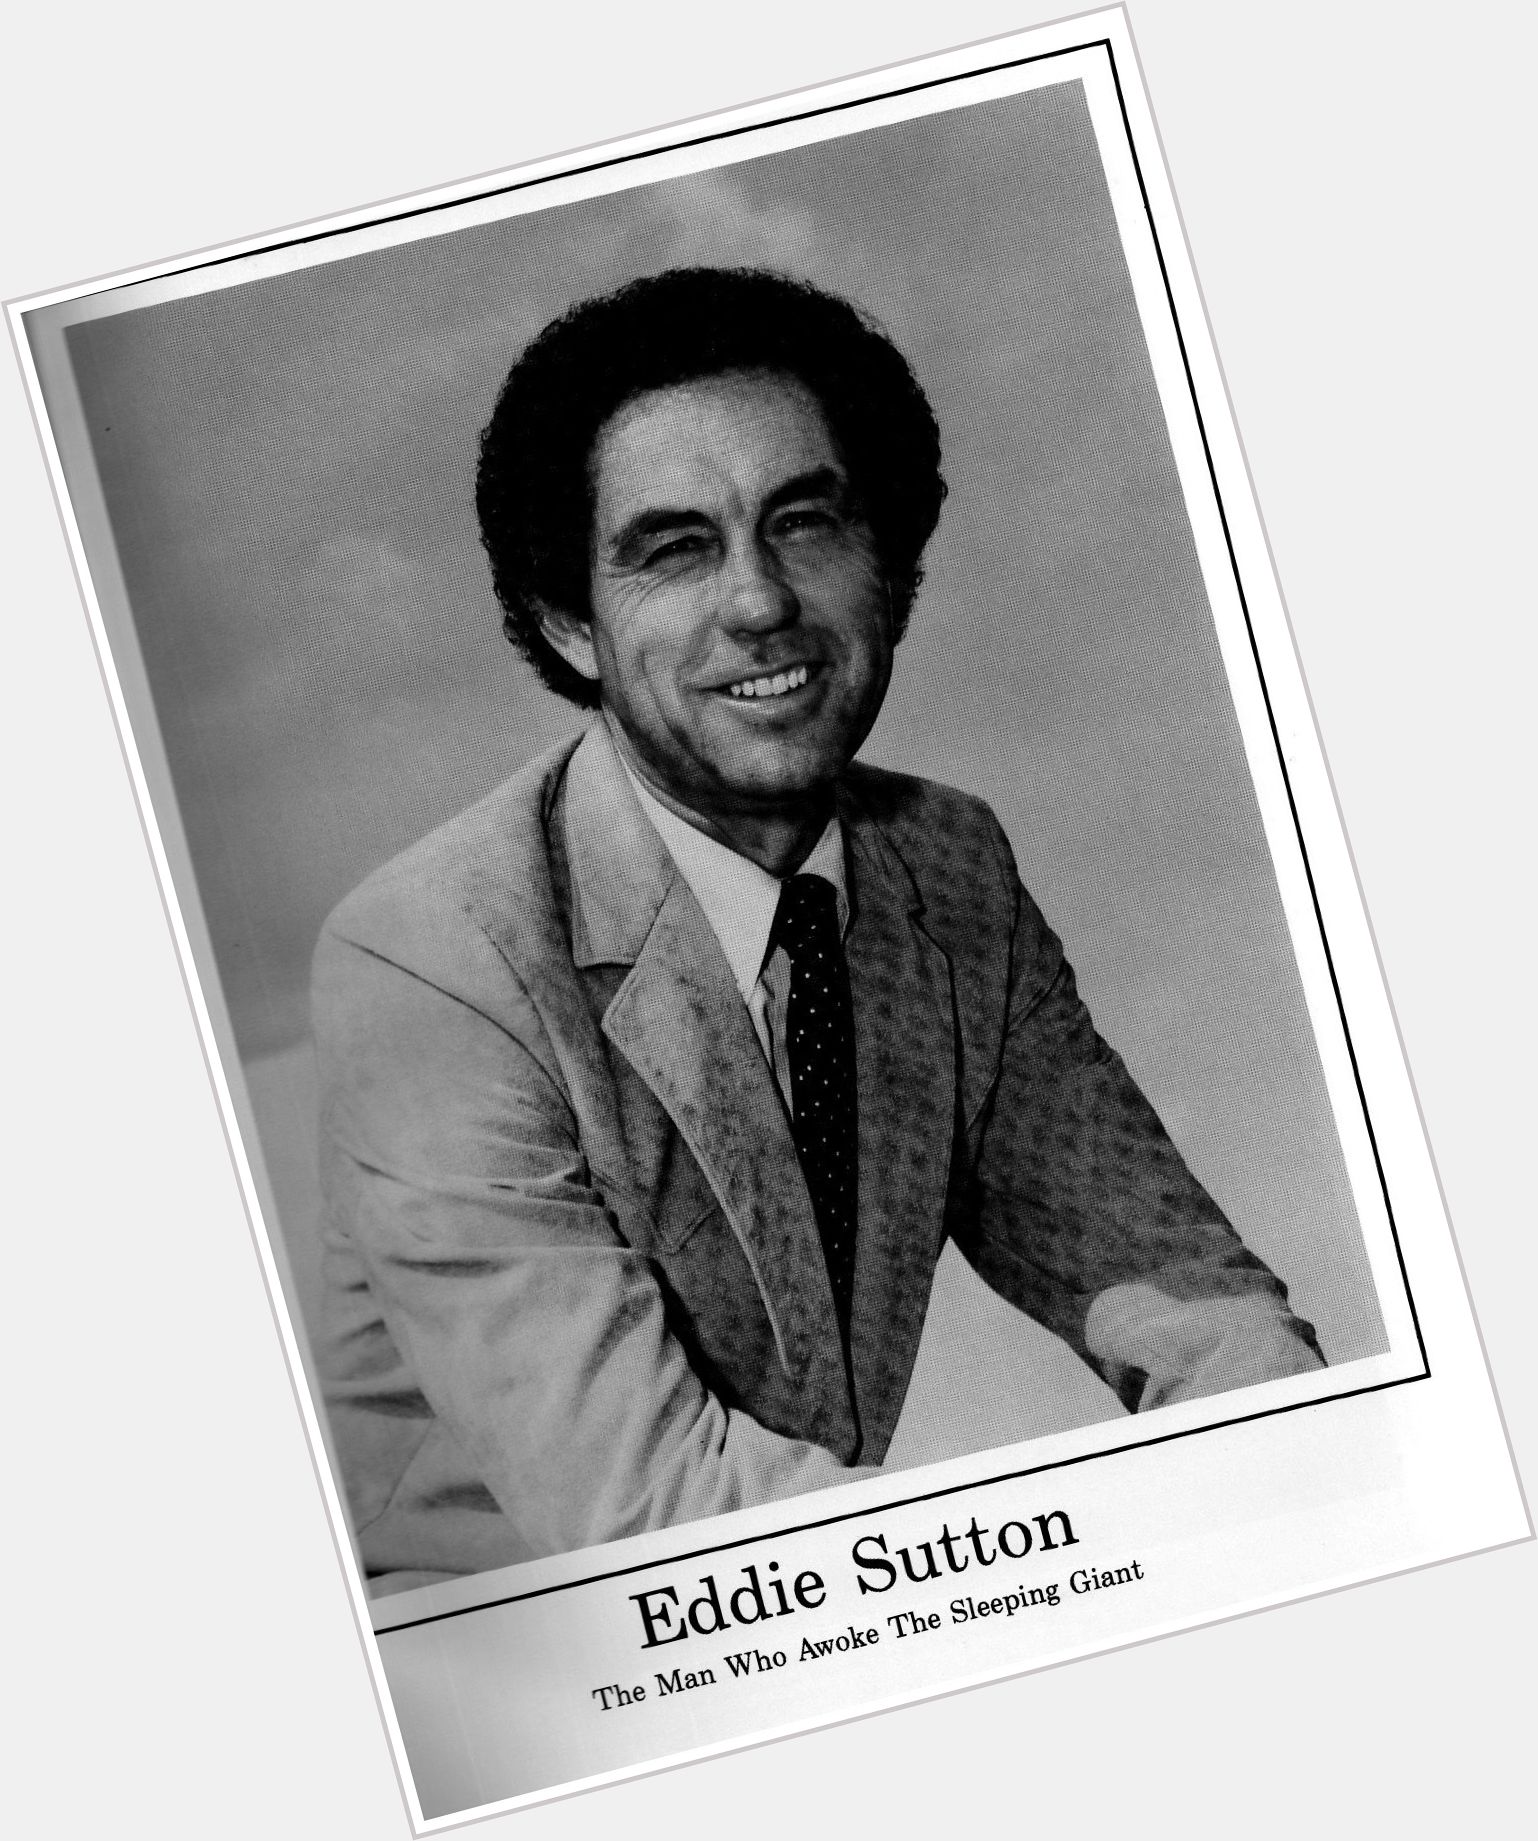 Eddie Sutton dating 2